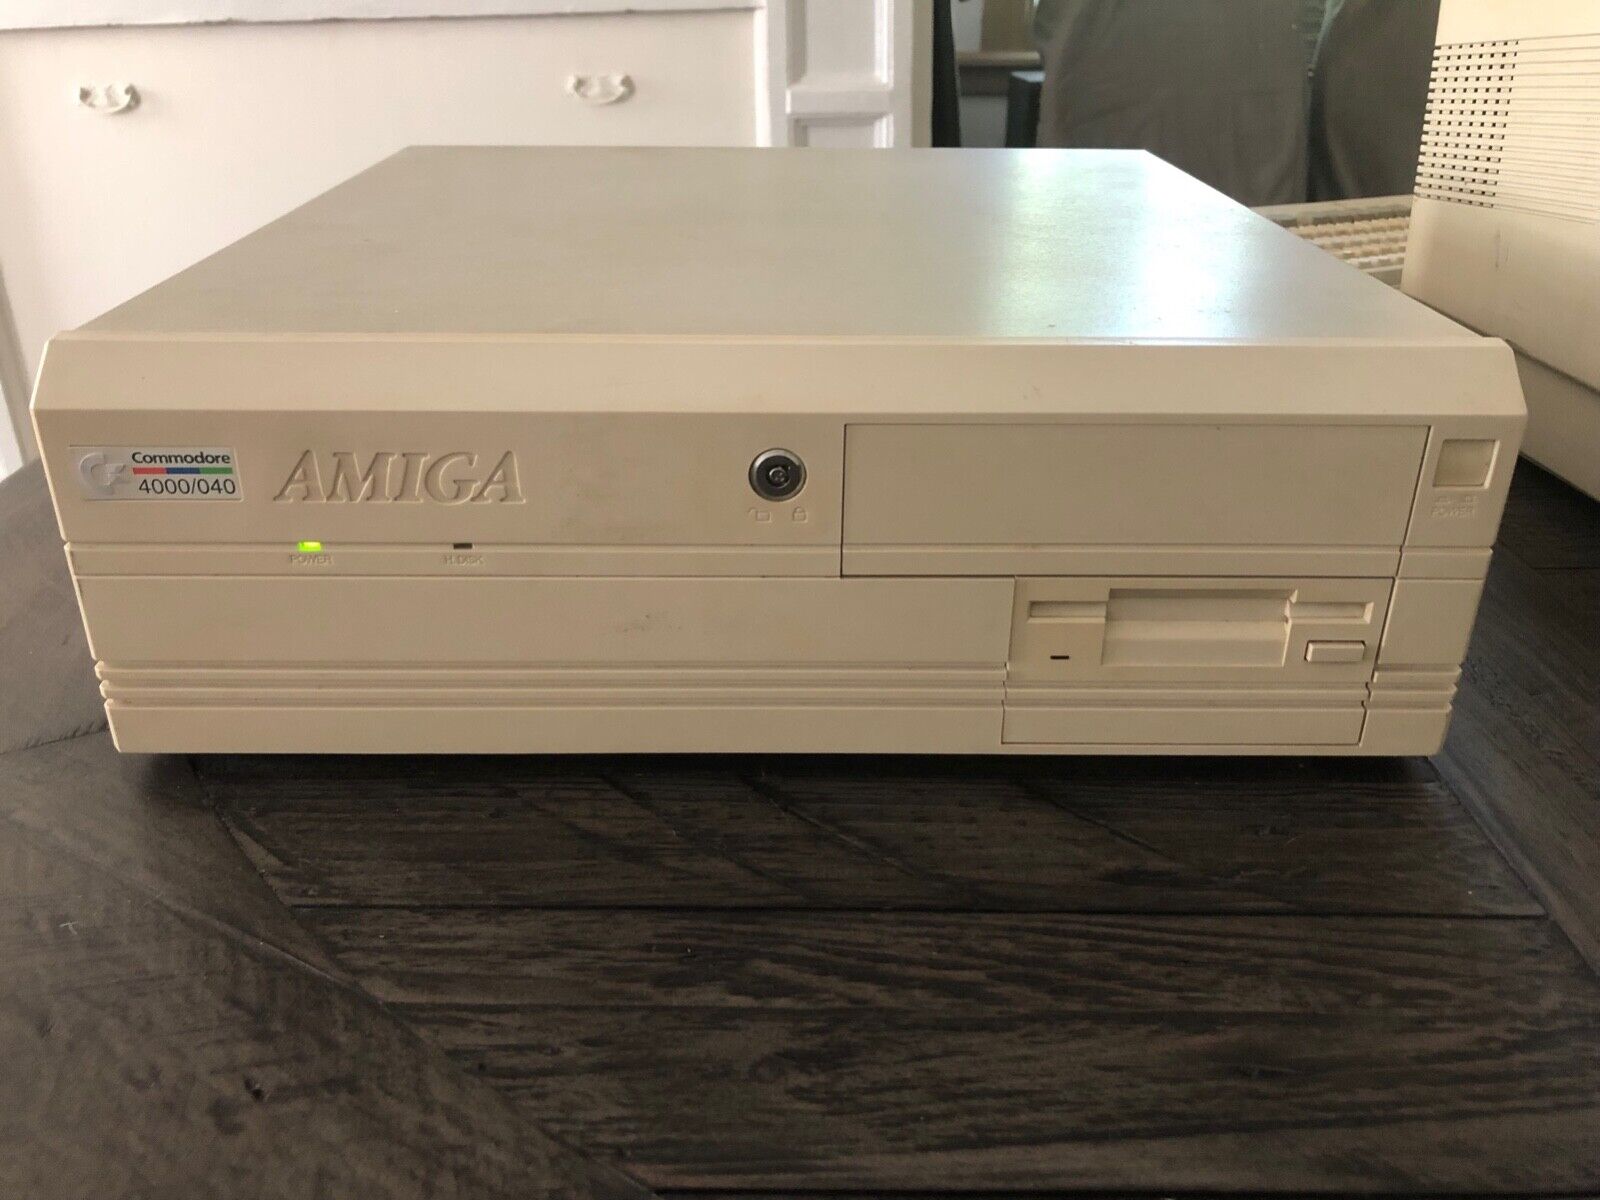 Commodore Amiga 4000/040 Computer.